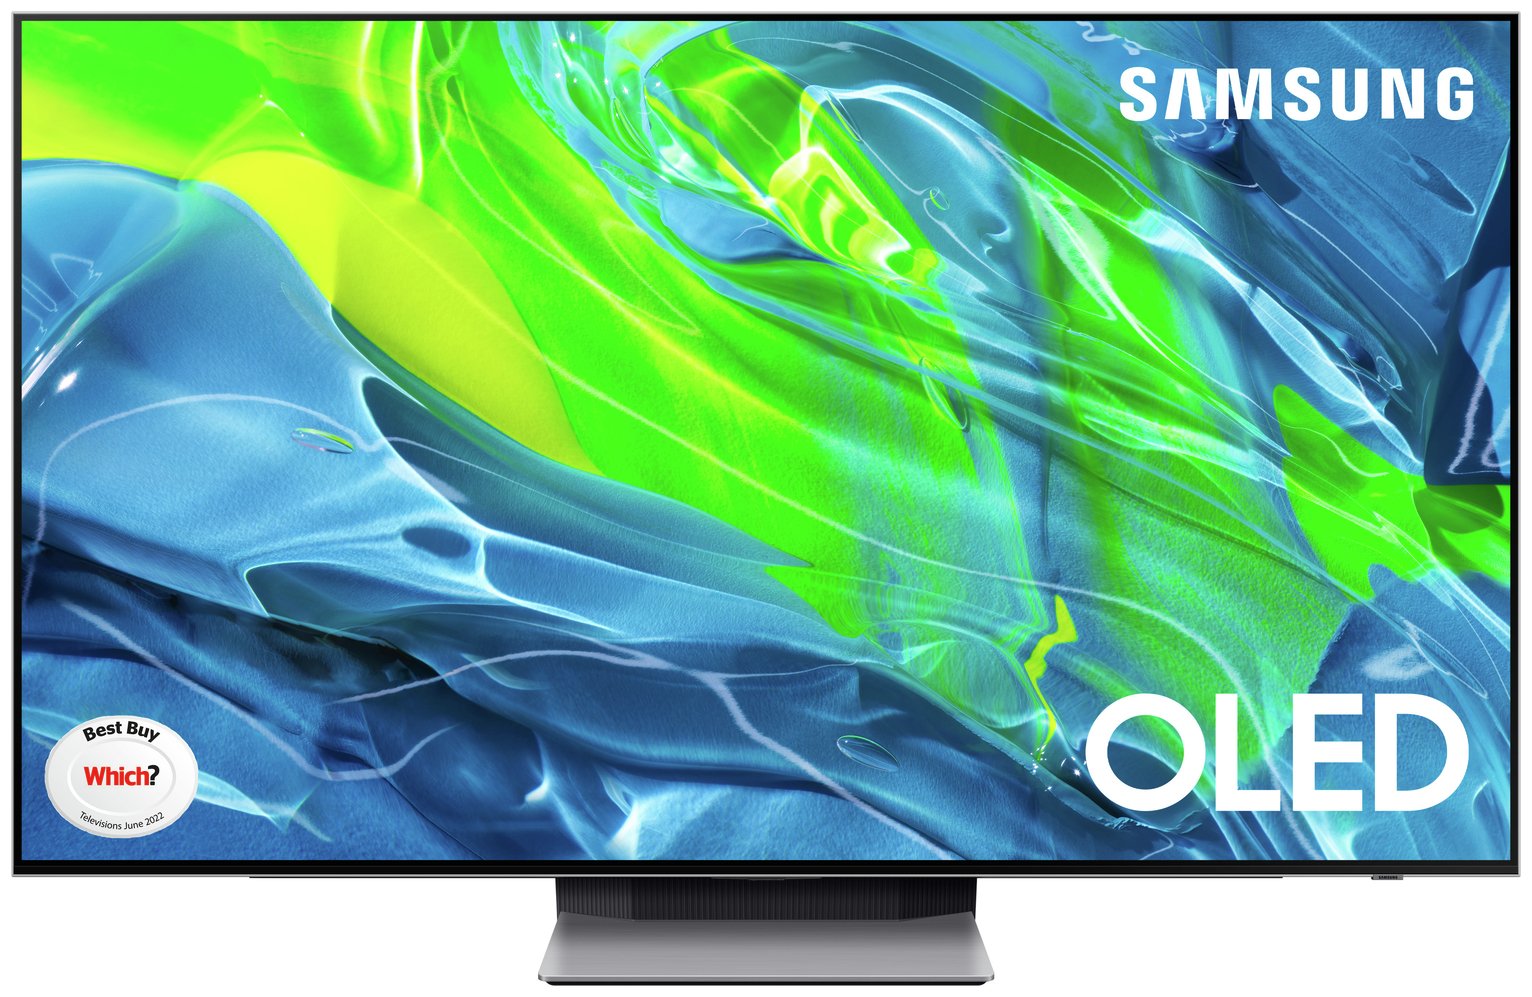 Samsung 55 Inch QE55S95BAT Smart 4K UHD HDR OLED TV